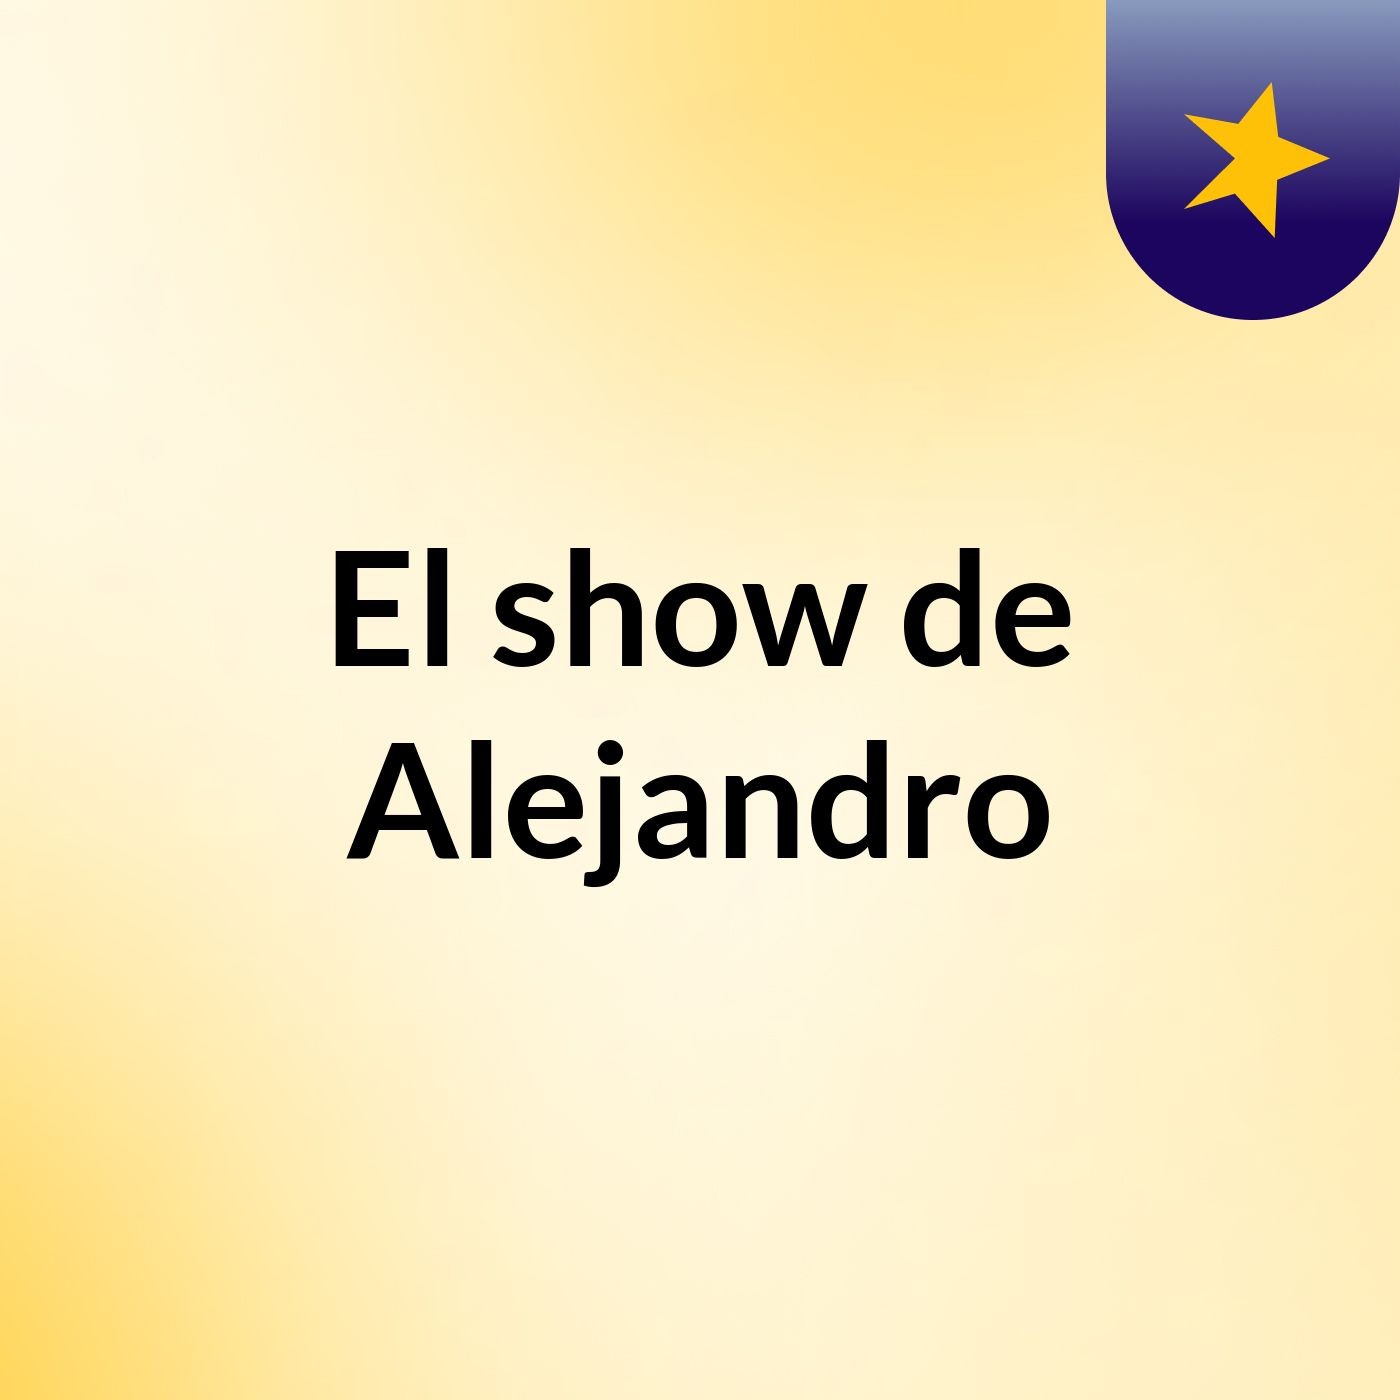 El show de Alejandro